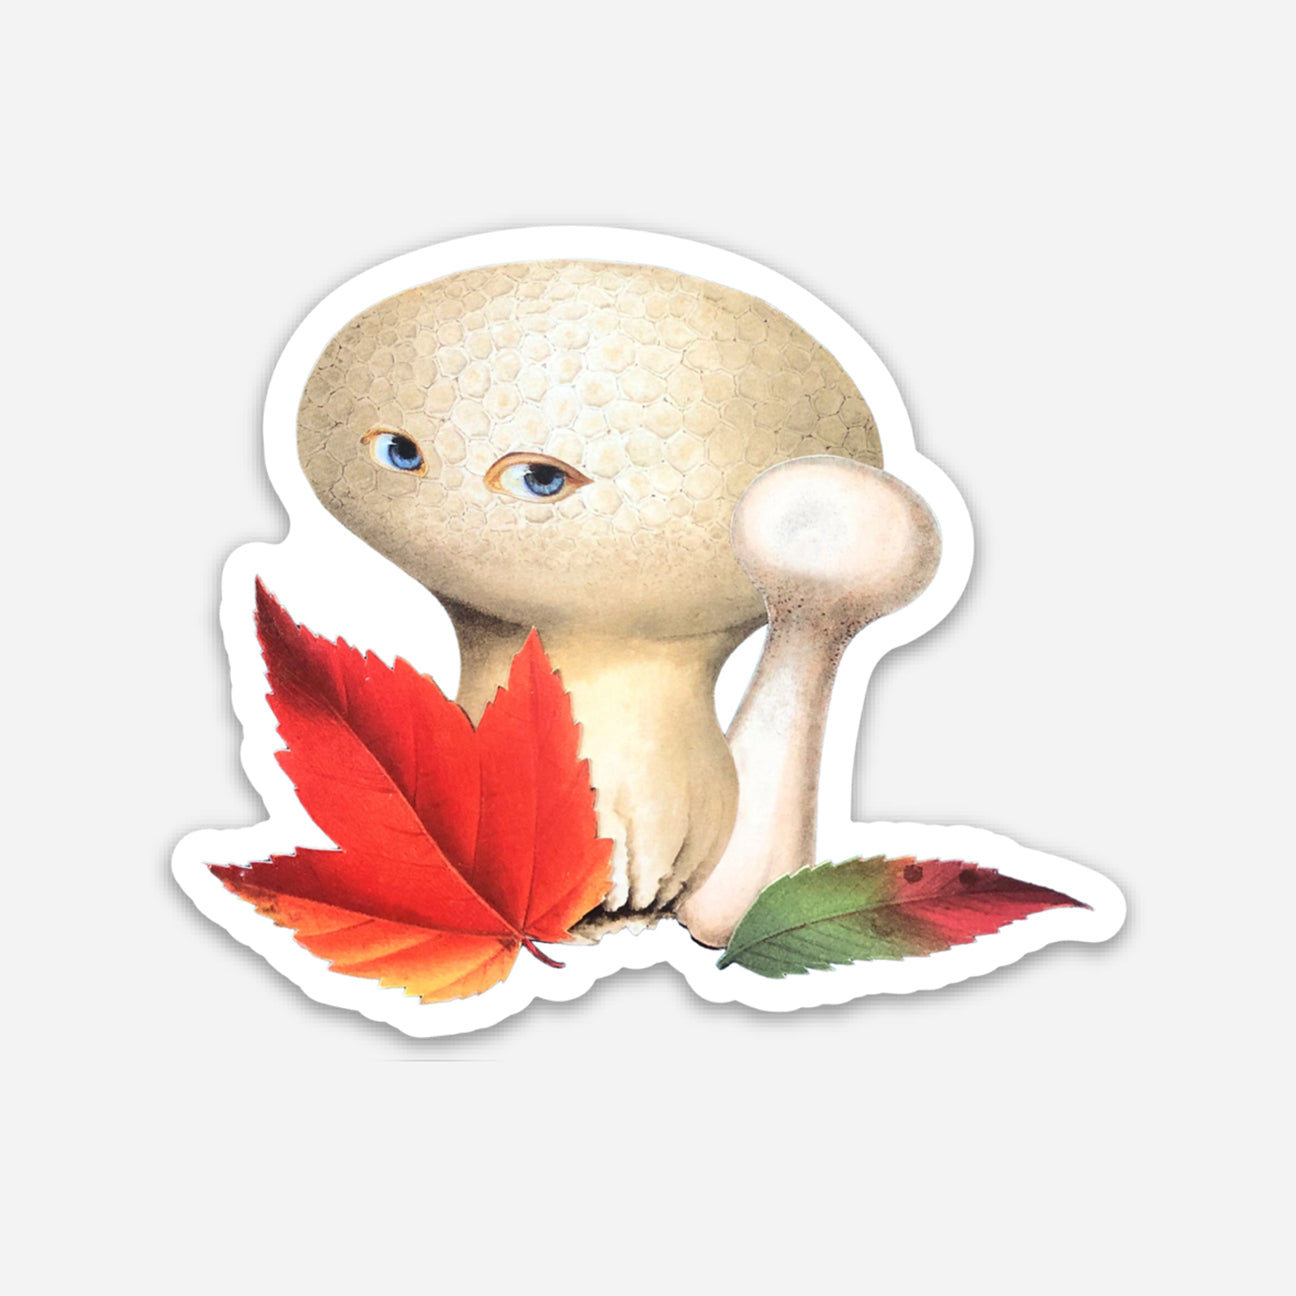 Autumn Shroom sticker